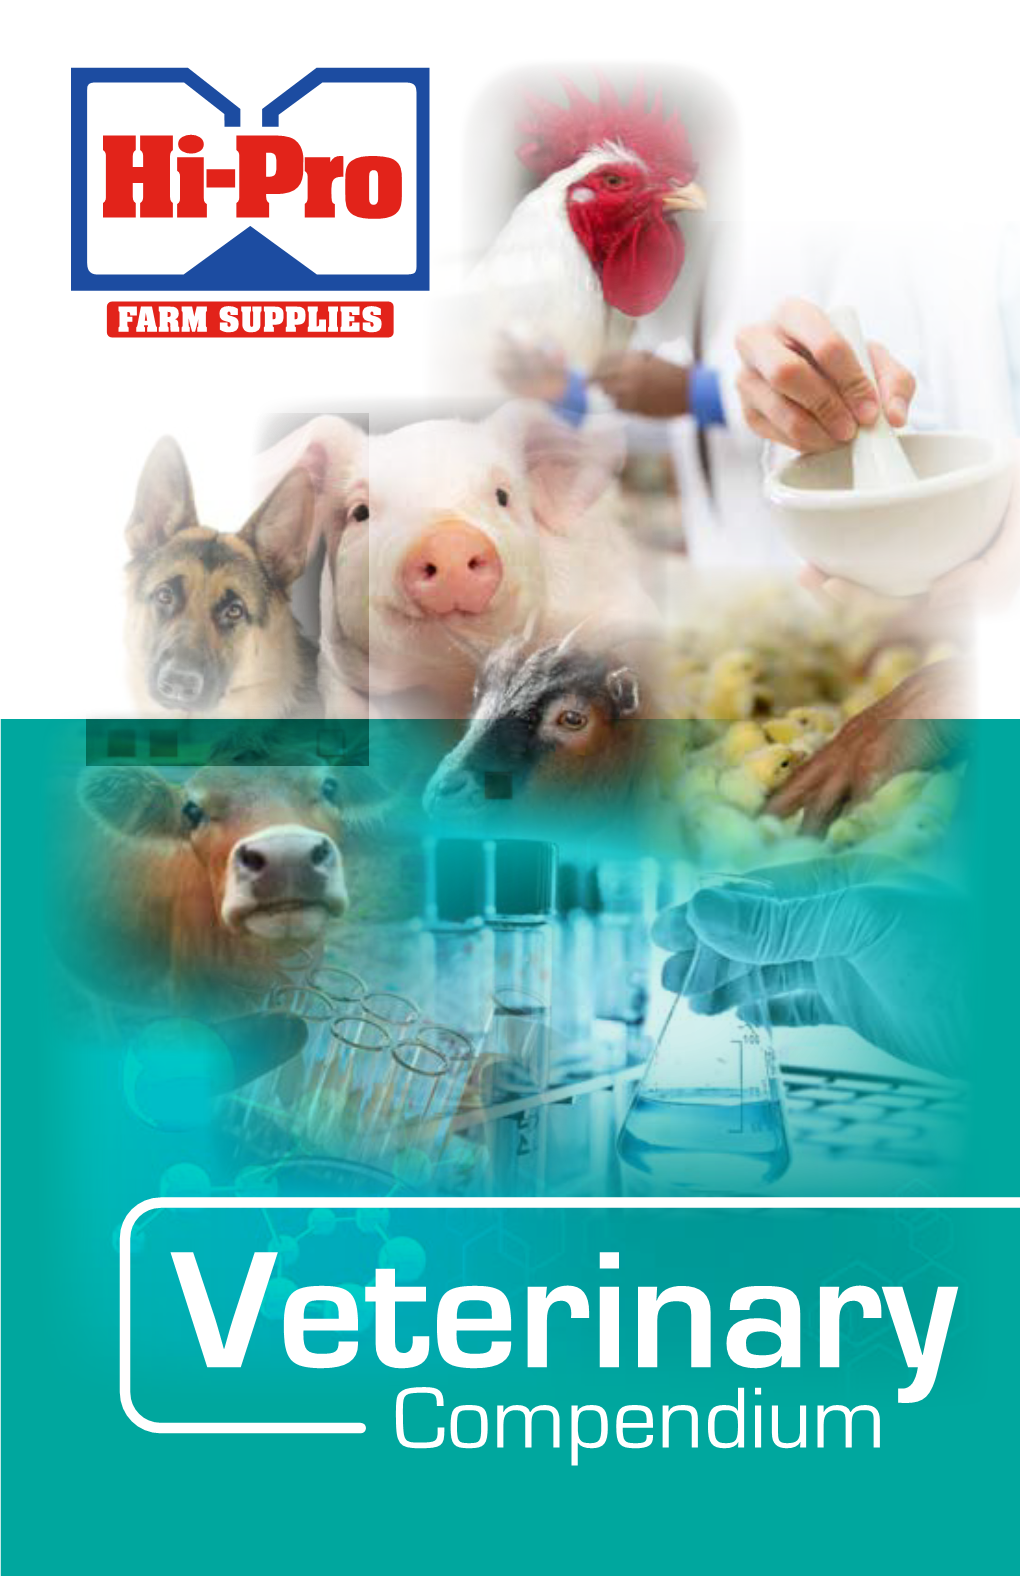 Hi-Pro Veterinary Compendium